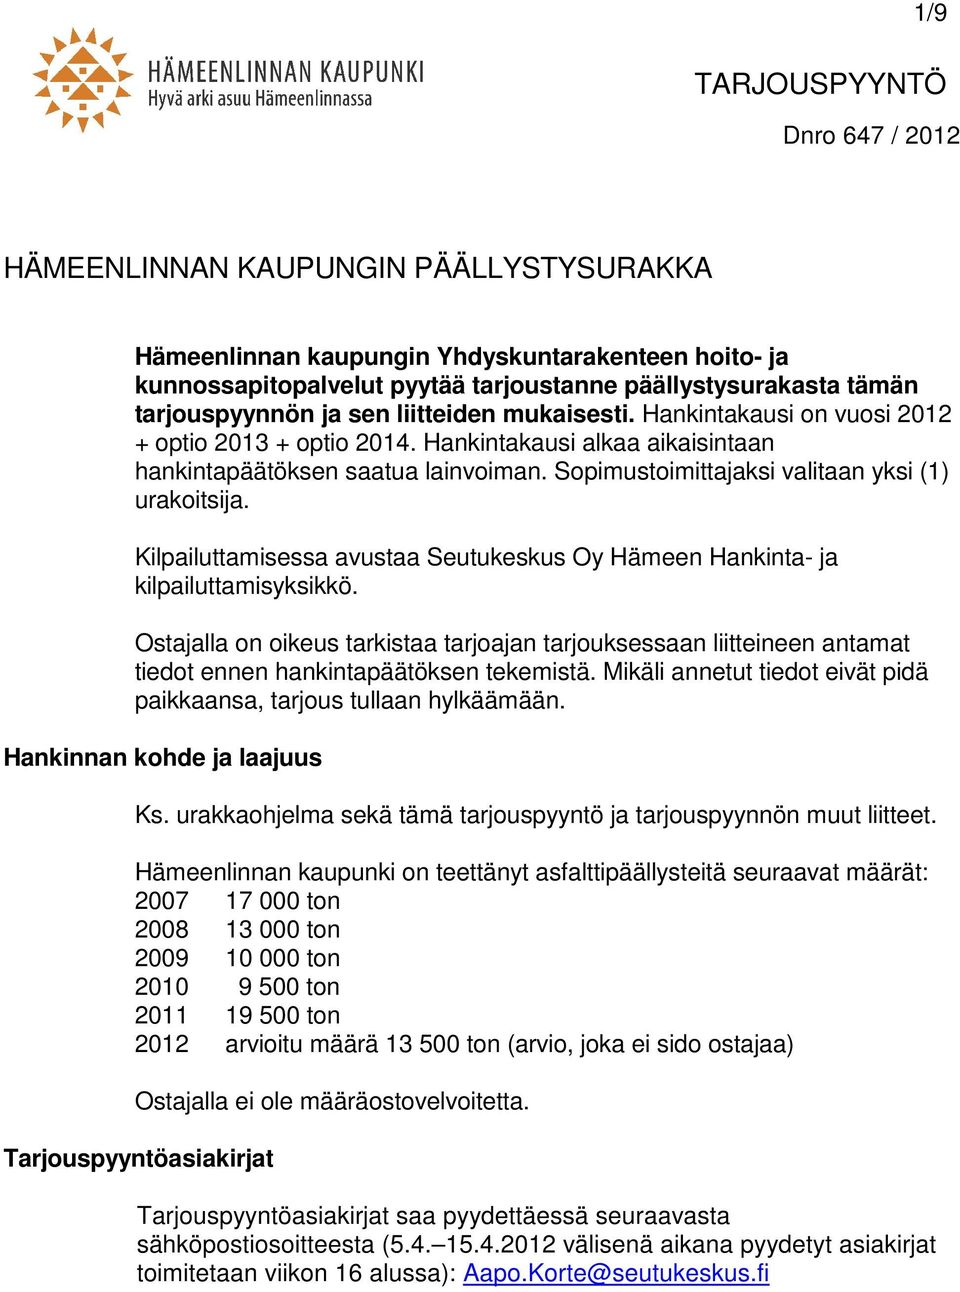 Kilpailuttamisessa avustaa Seutukeskus Oy Hämeen Hankinta- ja kilpailuttamisyksikkö.